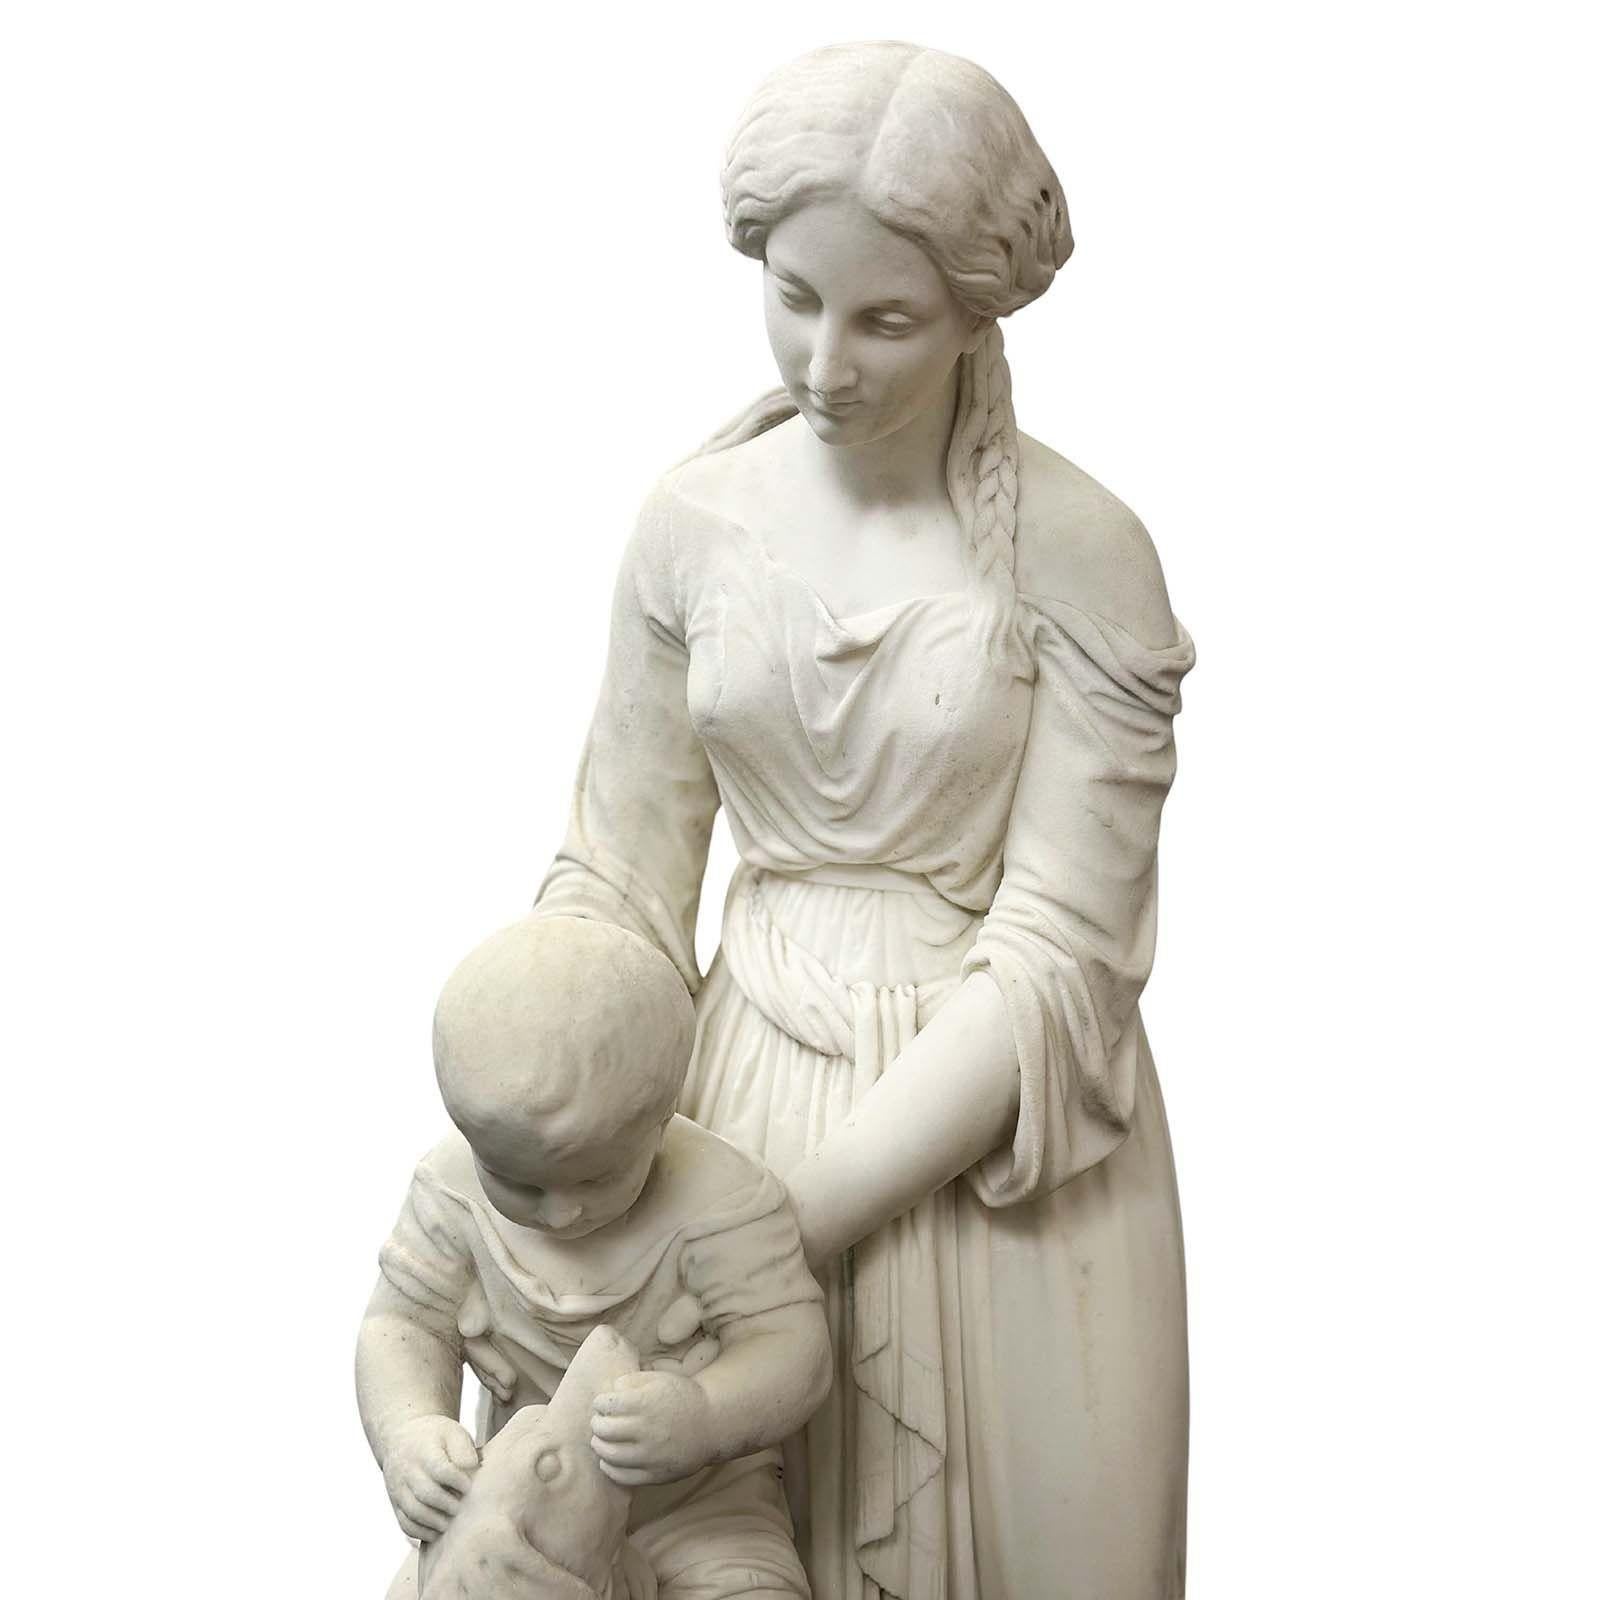 Charmante Skulptur aus weißem Marmor, die im 19. Jahrhundert in Italien hergestellt wurde. Im Mittelpunkt steht eine anmutige Mutter in traditioneller Kleidung und mit einem wunderschönen Zopf im Haar, die ihren kleinen Sohn sanft im Arm hält. Das